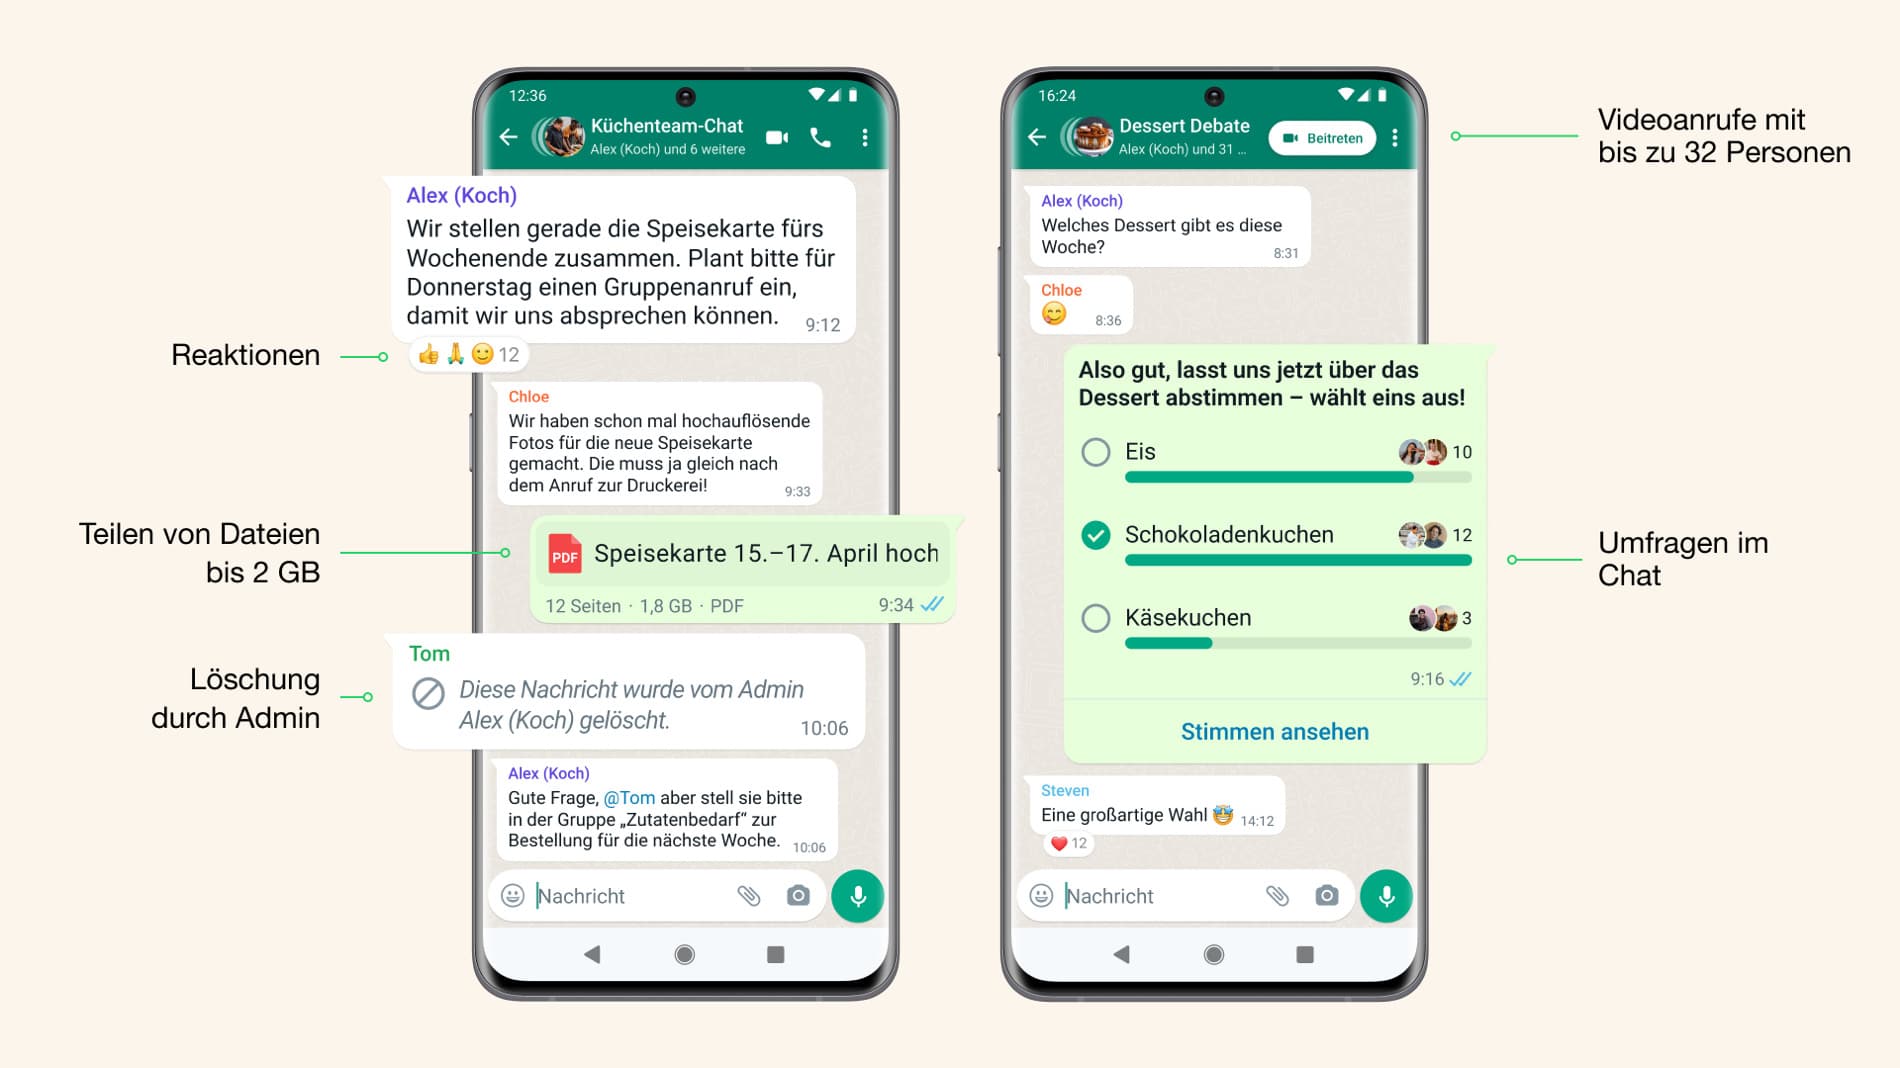 WhatsApp Messenger: inicia una encuesta directamente en el chat